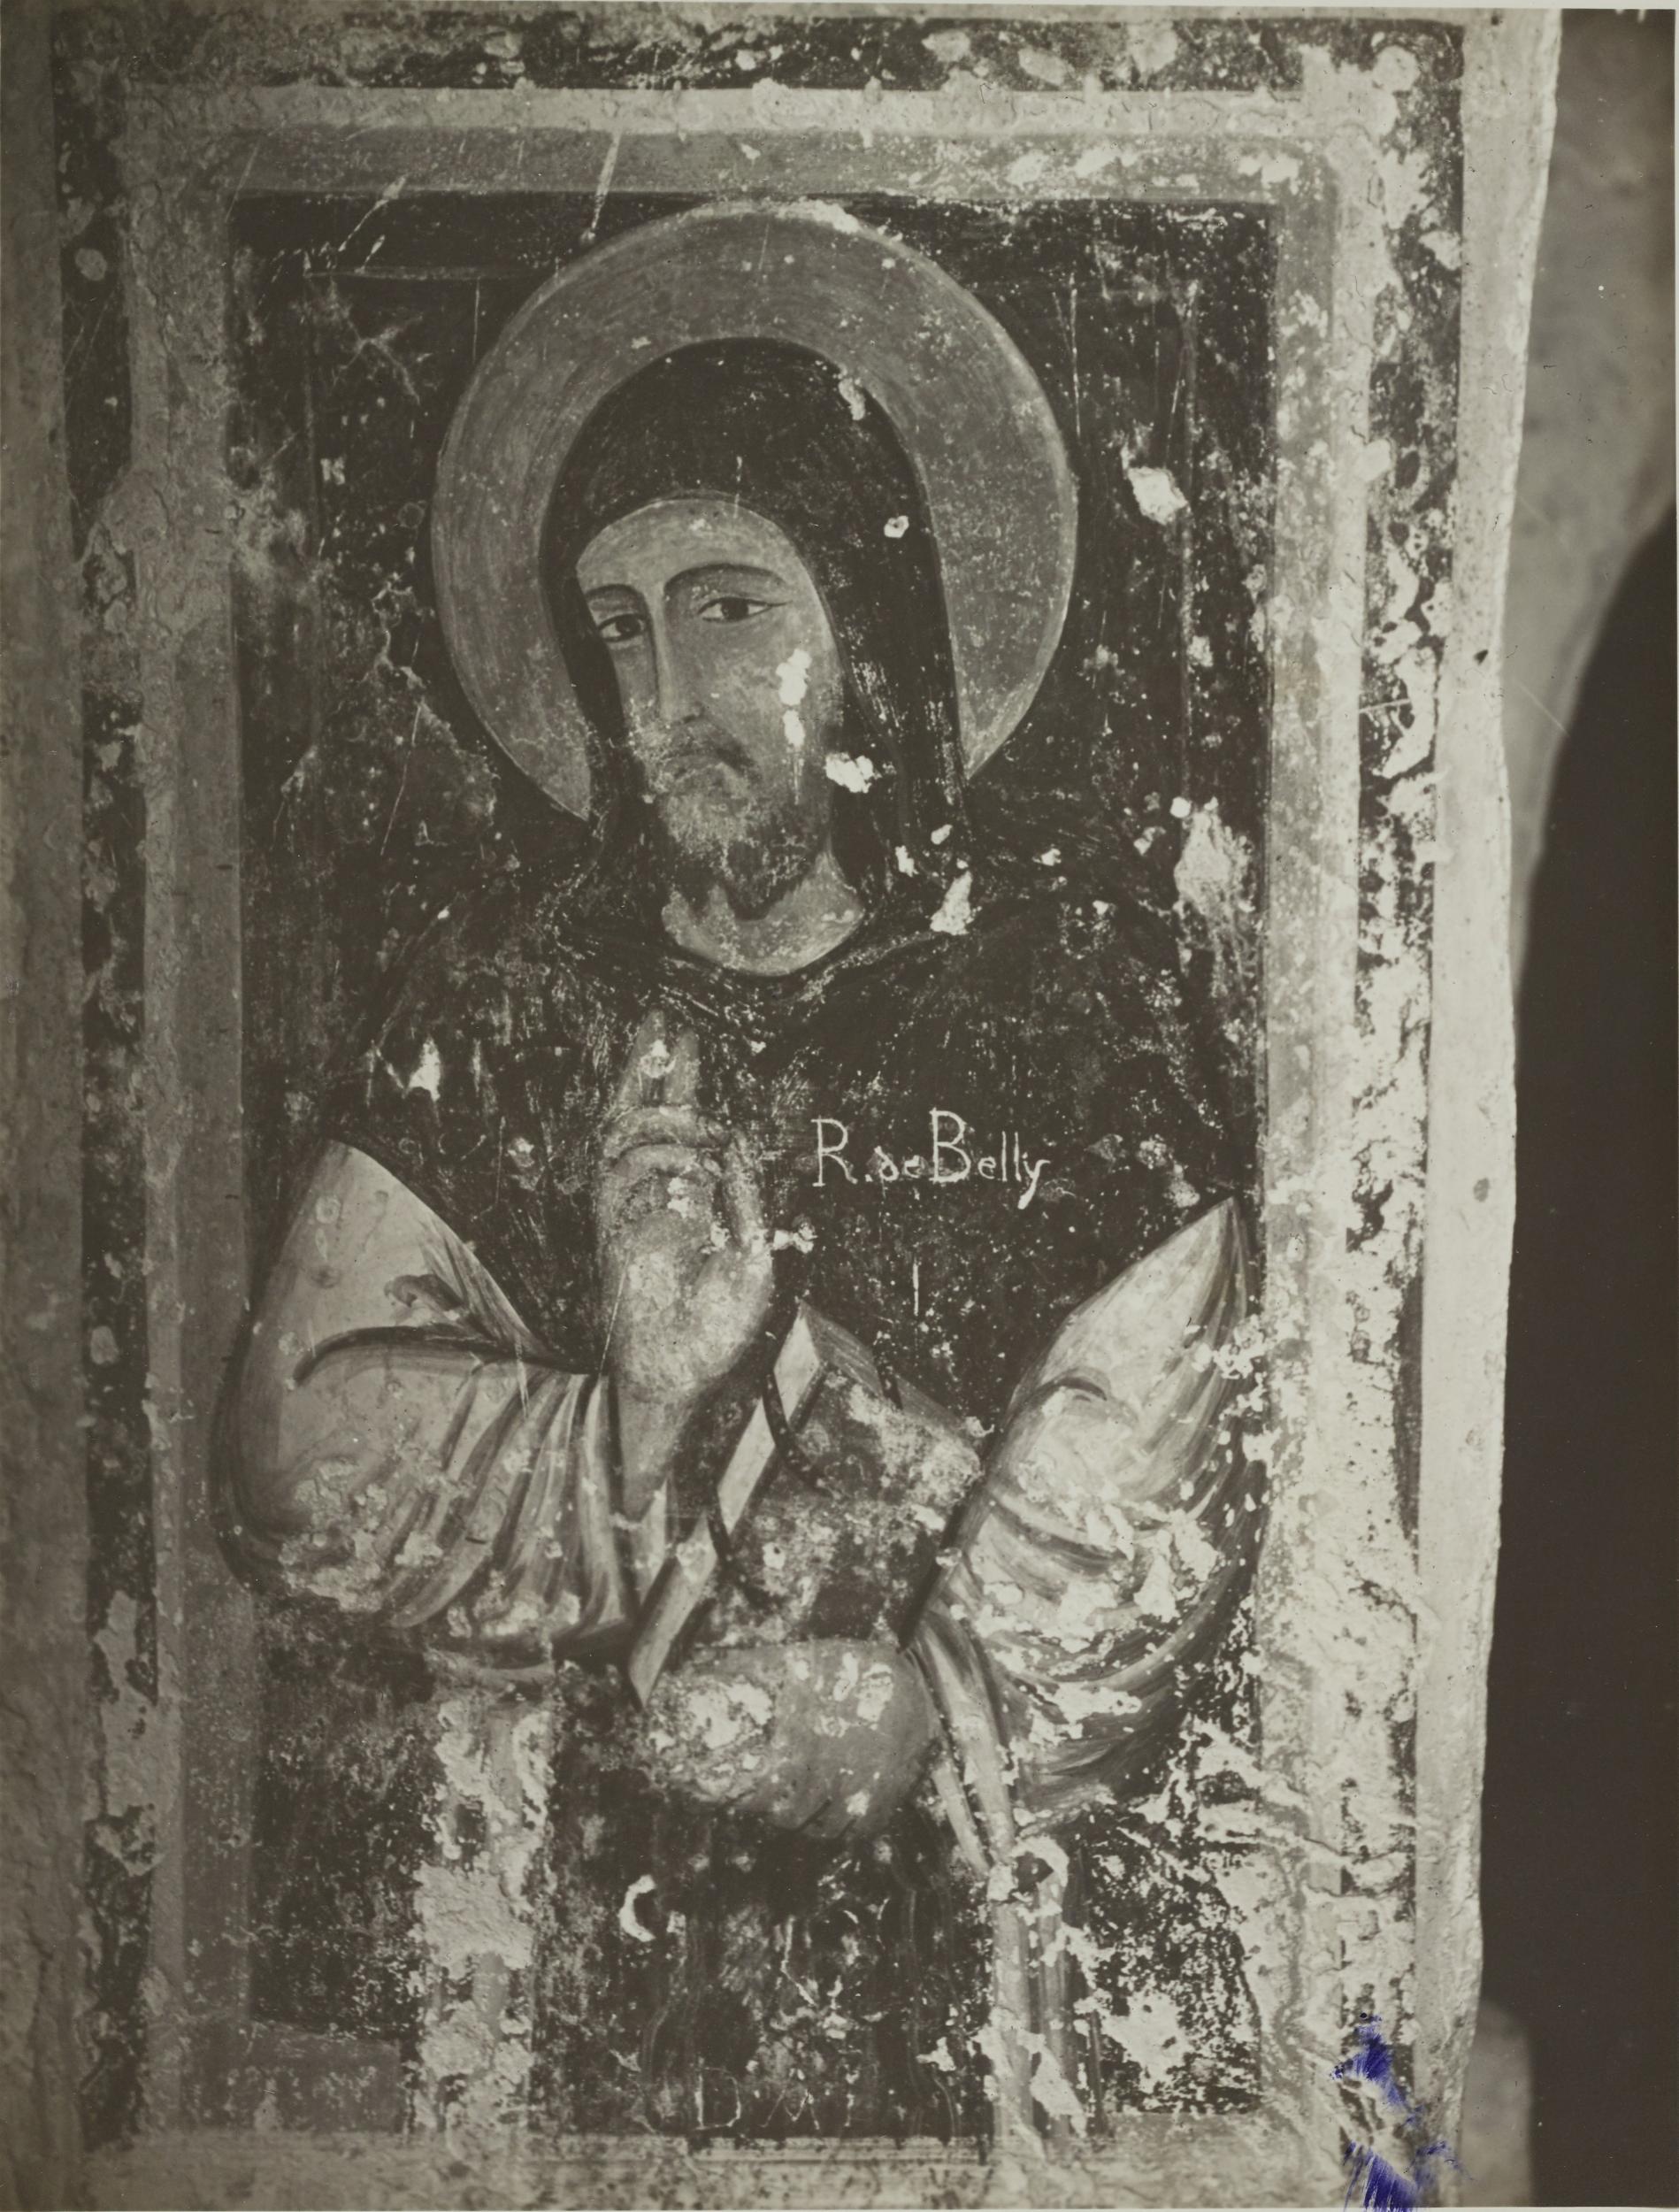 Fotografo non identificato, Andria - Chiesa di S. Croce, cripta, S. Leonardo, 1926-1950, gelatina ai sali d'argento/carta, MPI131864